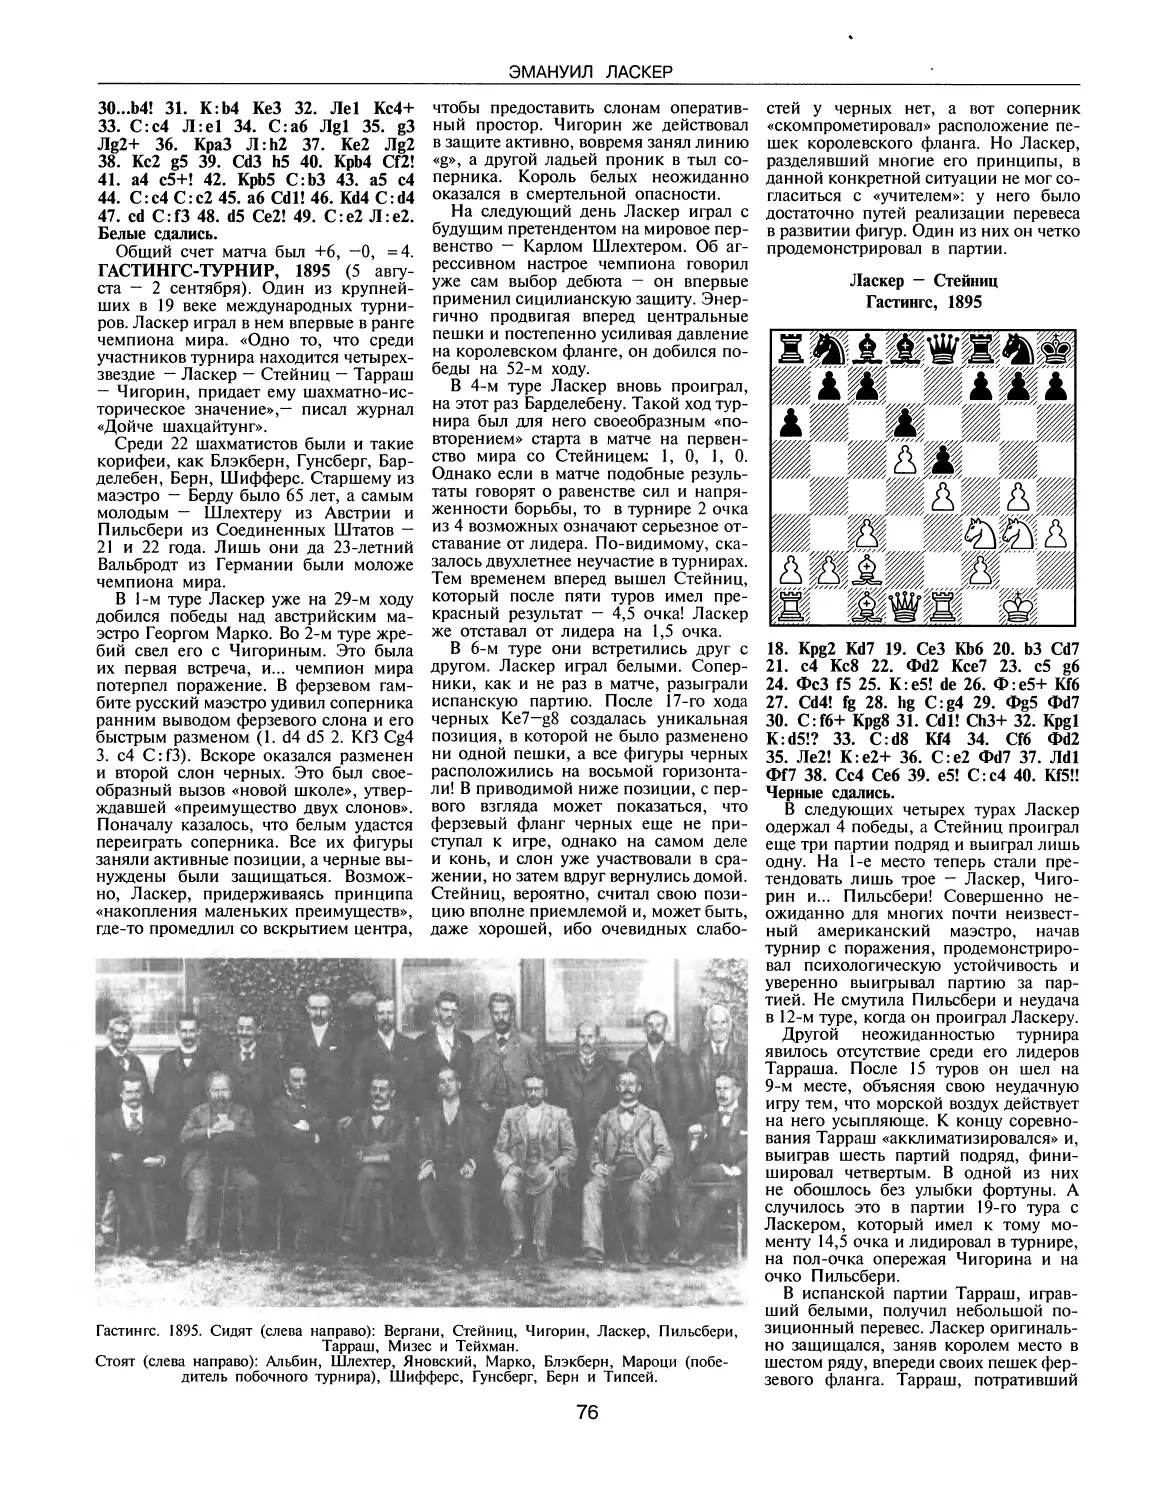 Гастингс-турнир, 1895